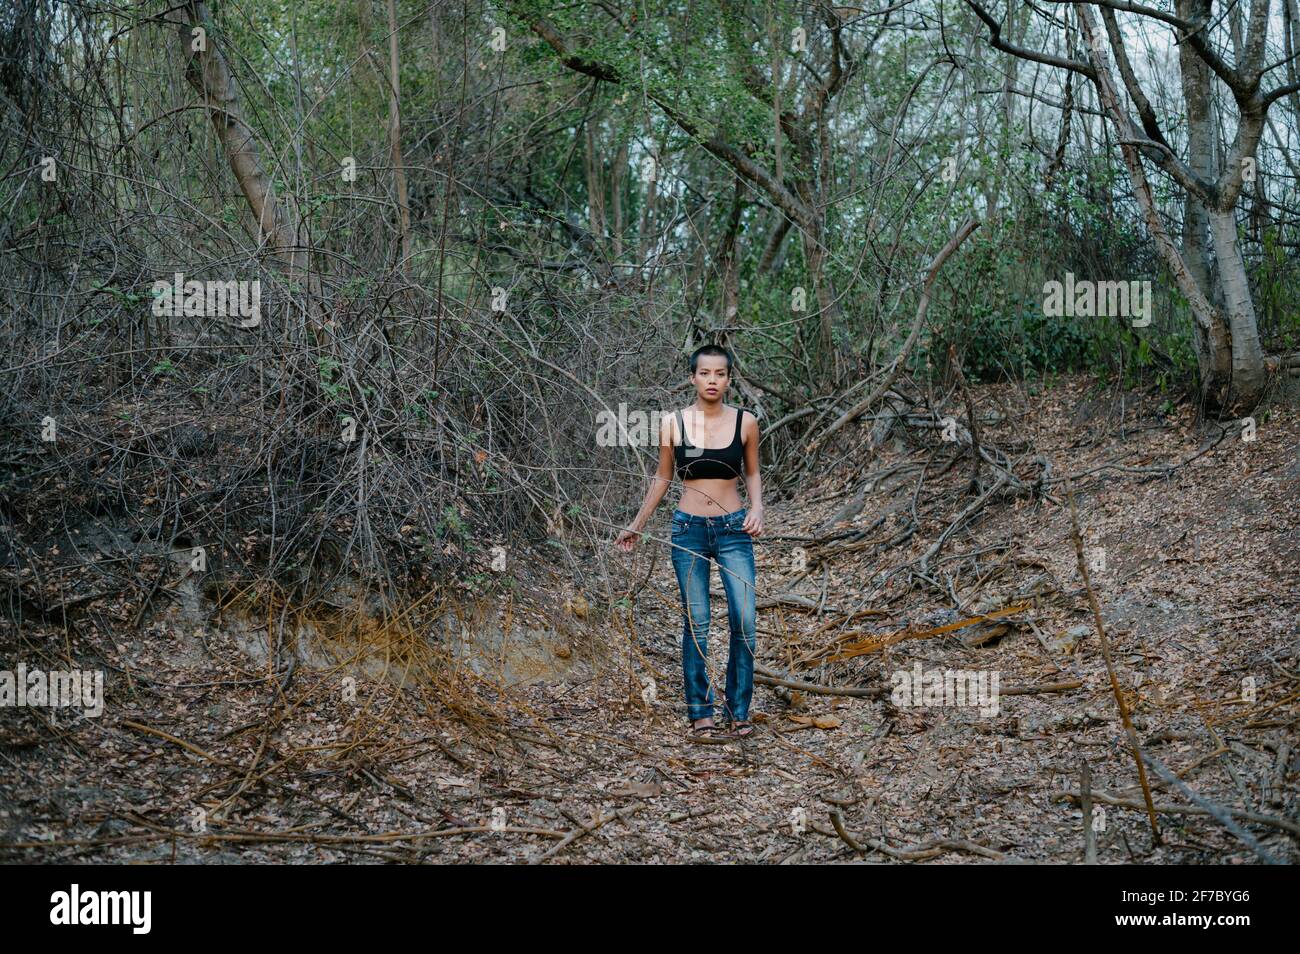 Tiro largo de una joven de pelo corto asiática de pie sola en un bosque, con un sujetador deportivo y pantalones vaqueros azules Foto de stock